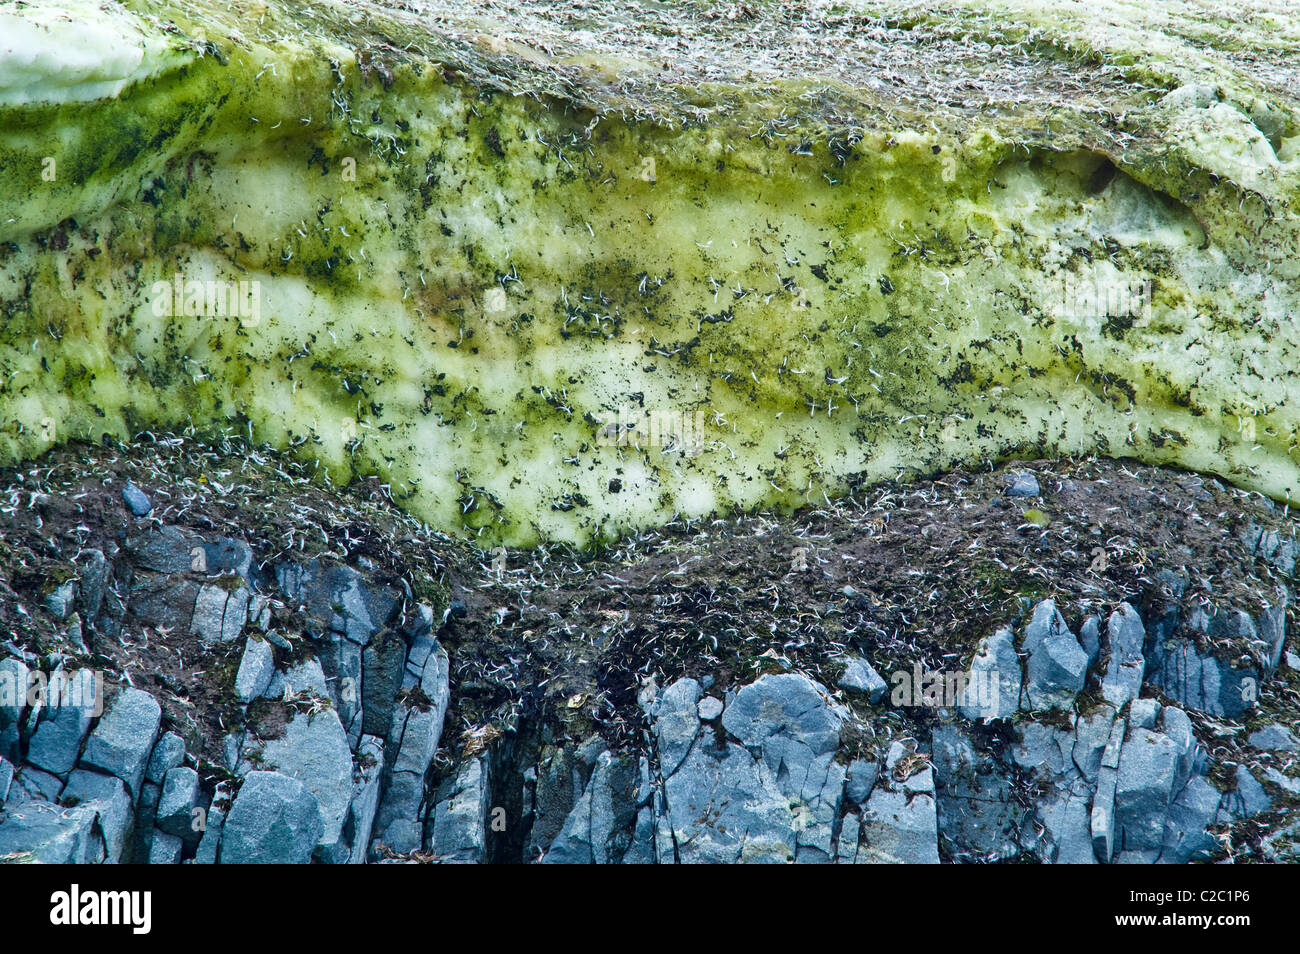 Snow Algae, cryoalgae, growing on ice near an Adelie Penguin colony Stock Photo